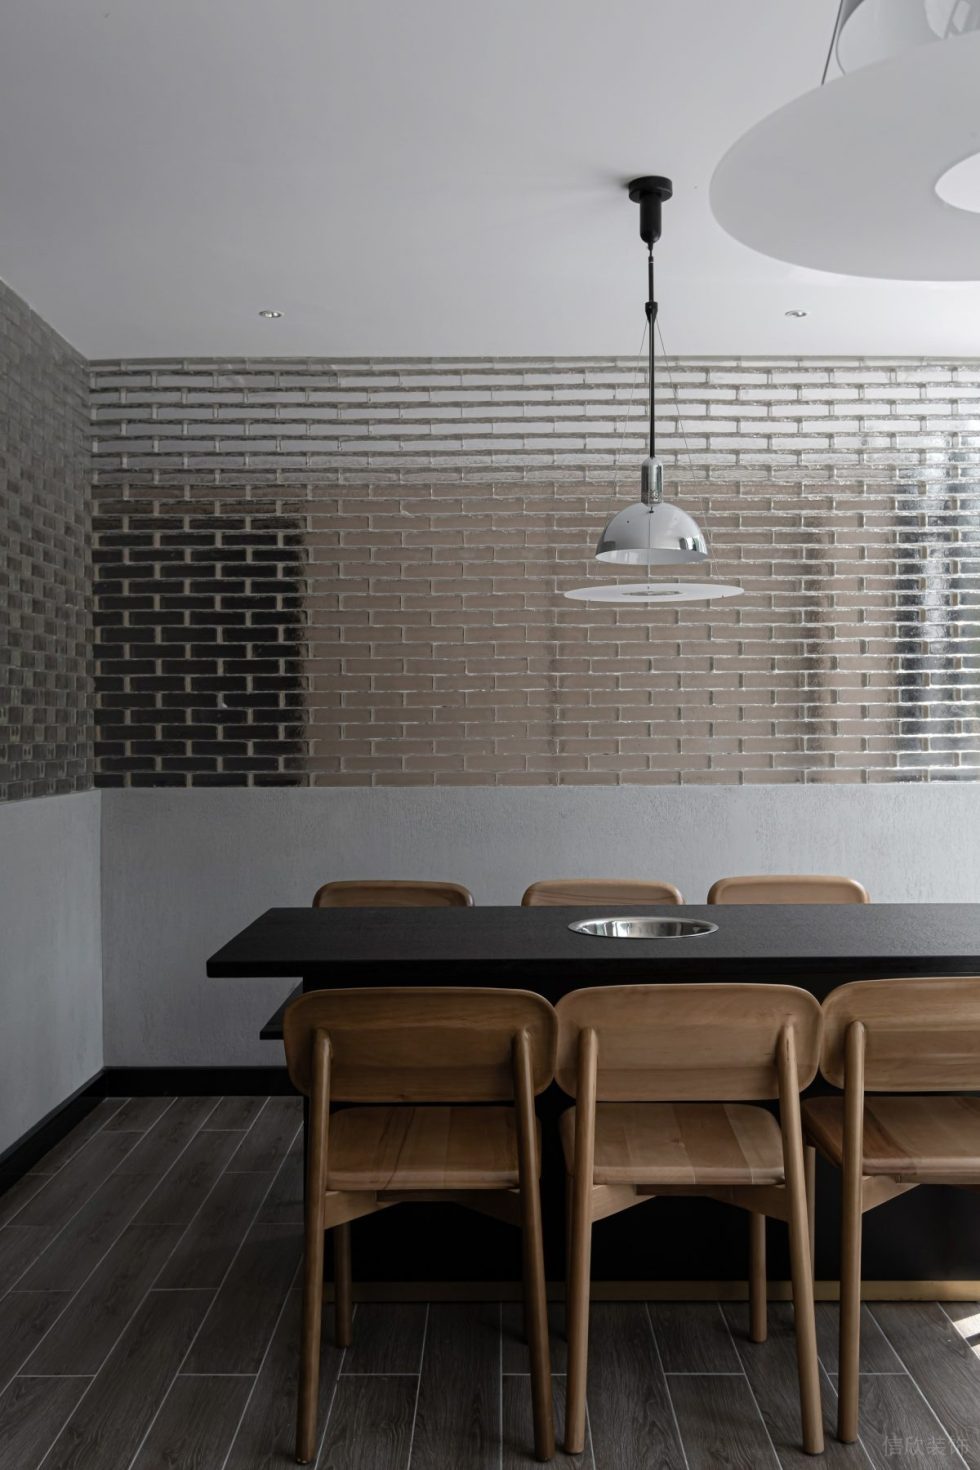 简约中式风中餐厅透明玻璃砖围墙卡座区装修设计